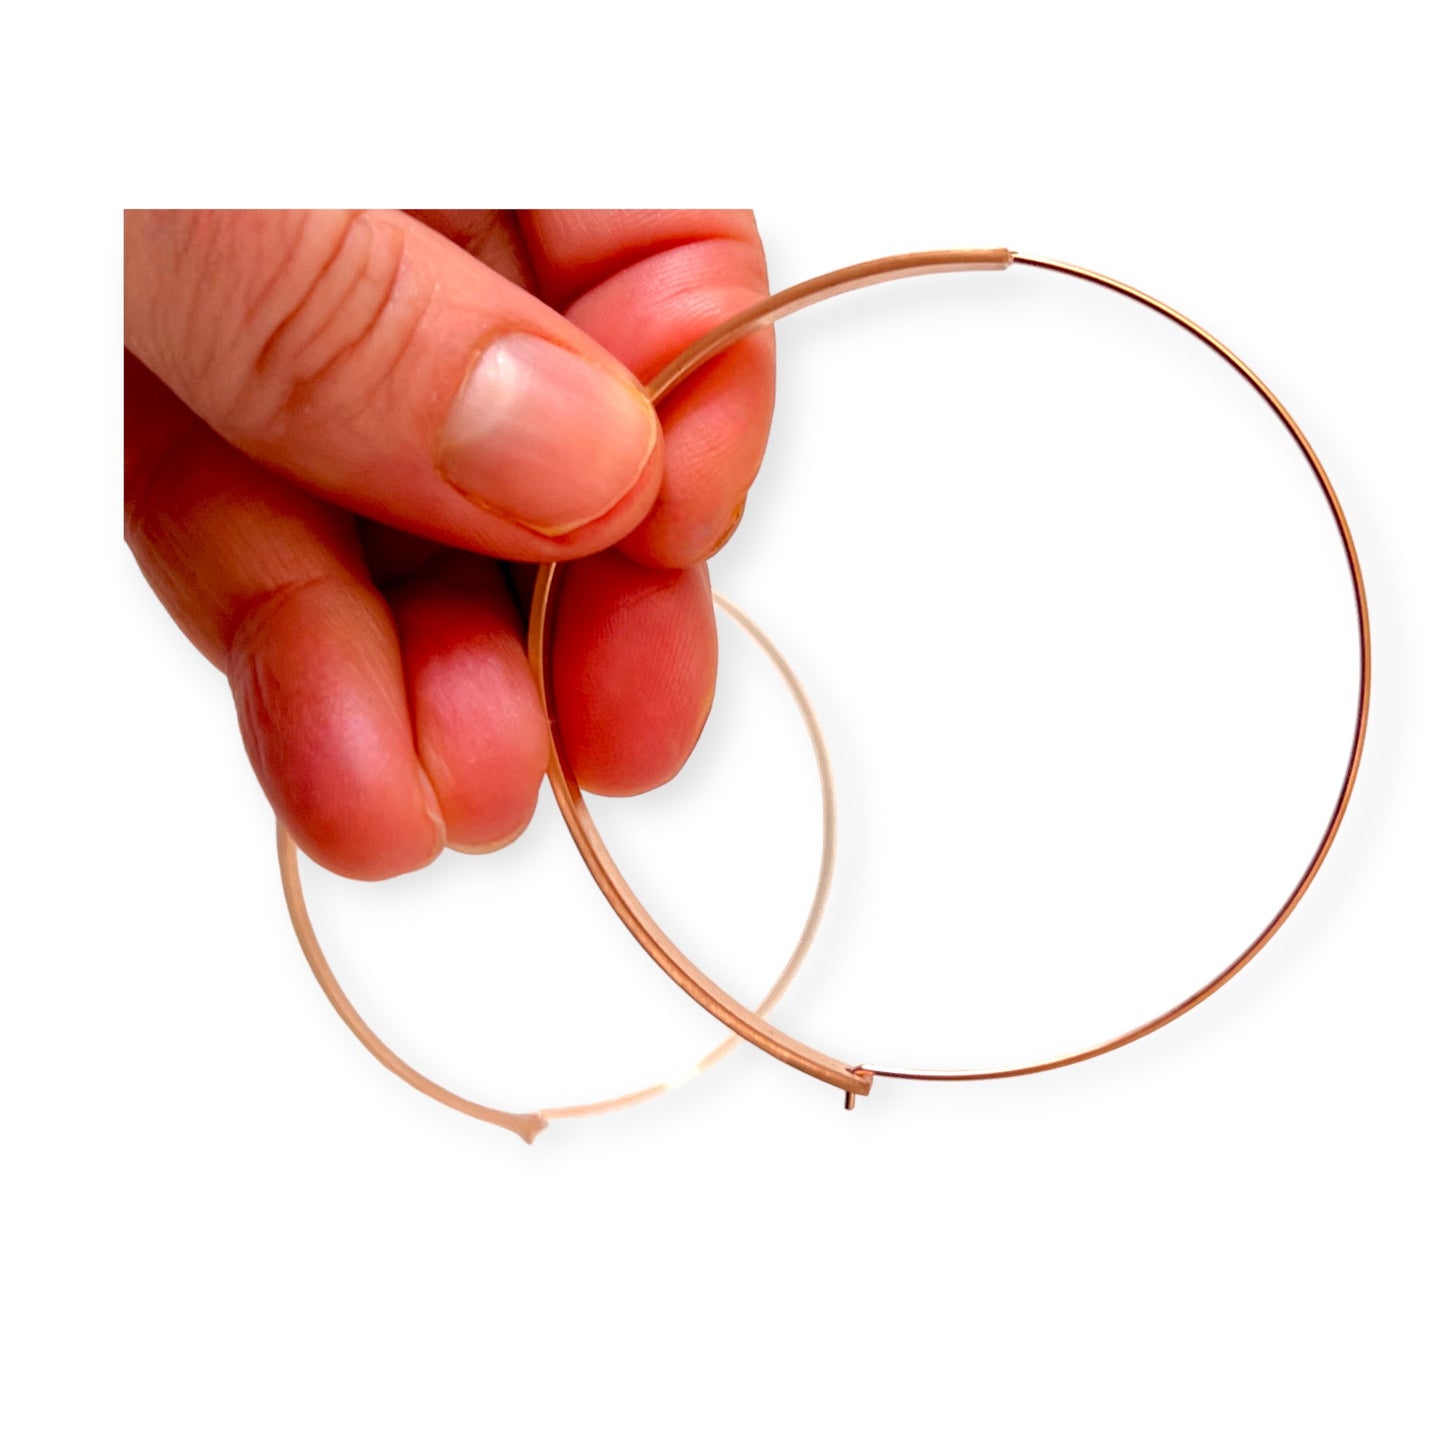 Copper hoop earrings - Sundara Joon